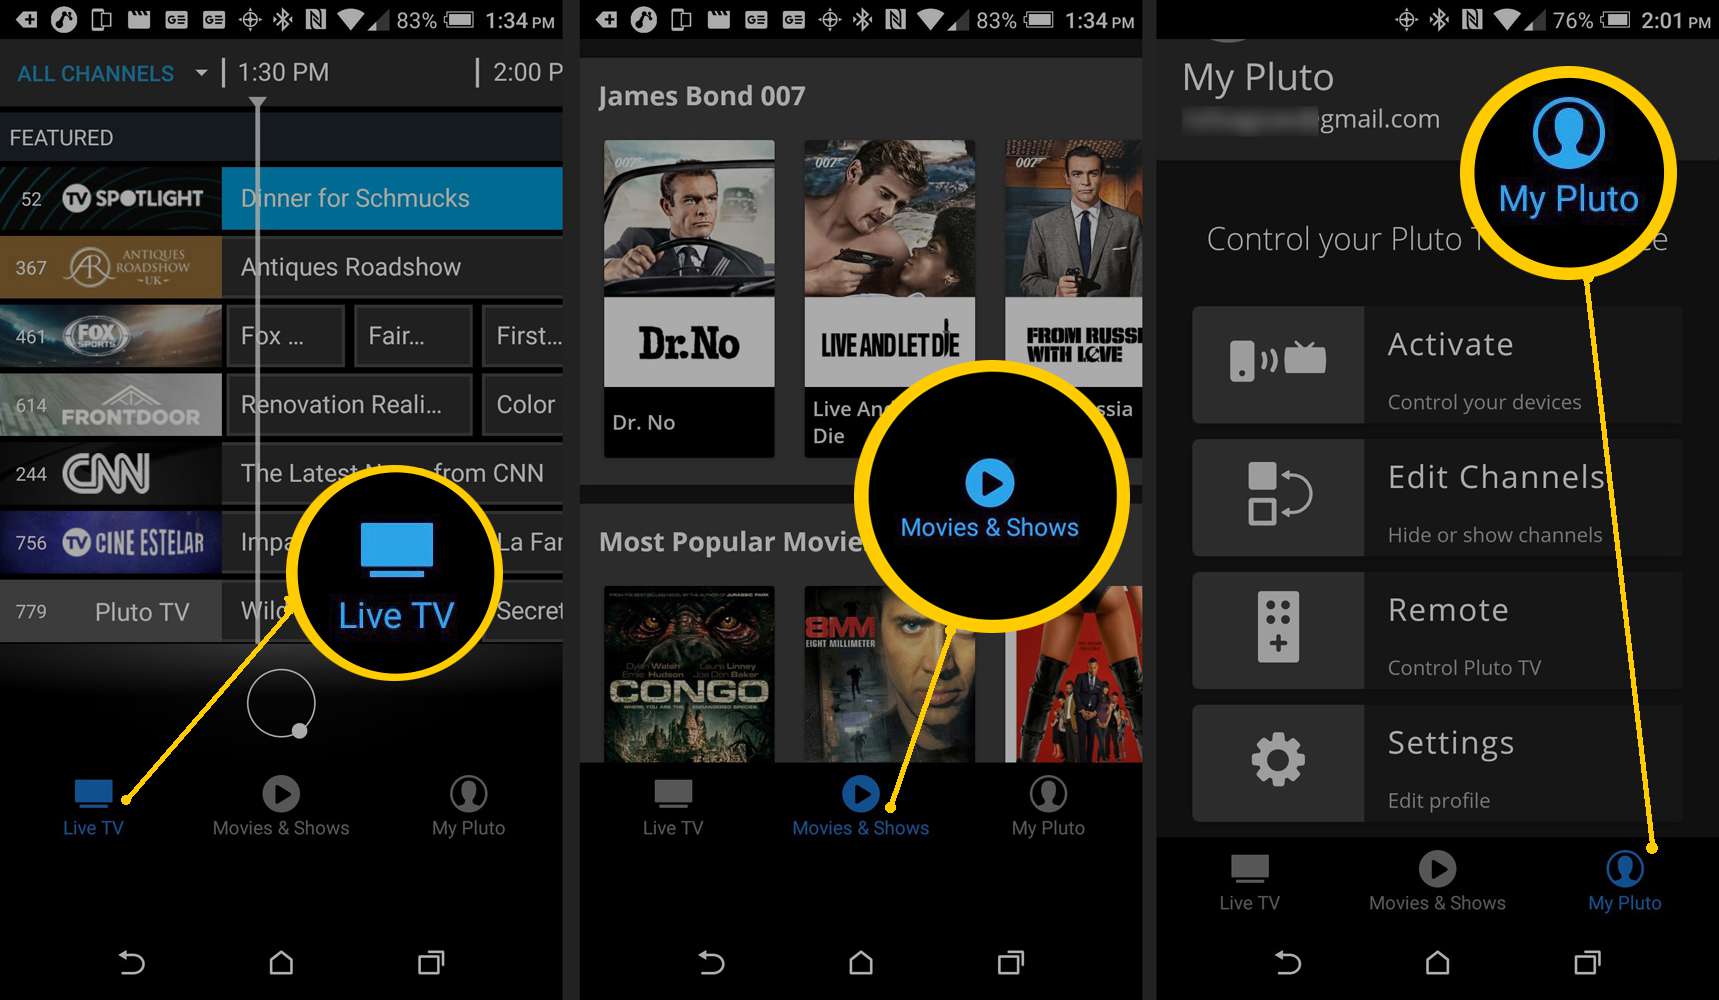 Pluto TV Smartphone App - Live TV, filmer och TV, Min Pluto TV